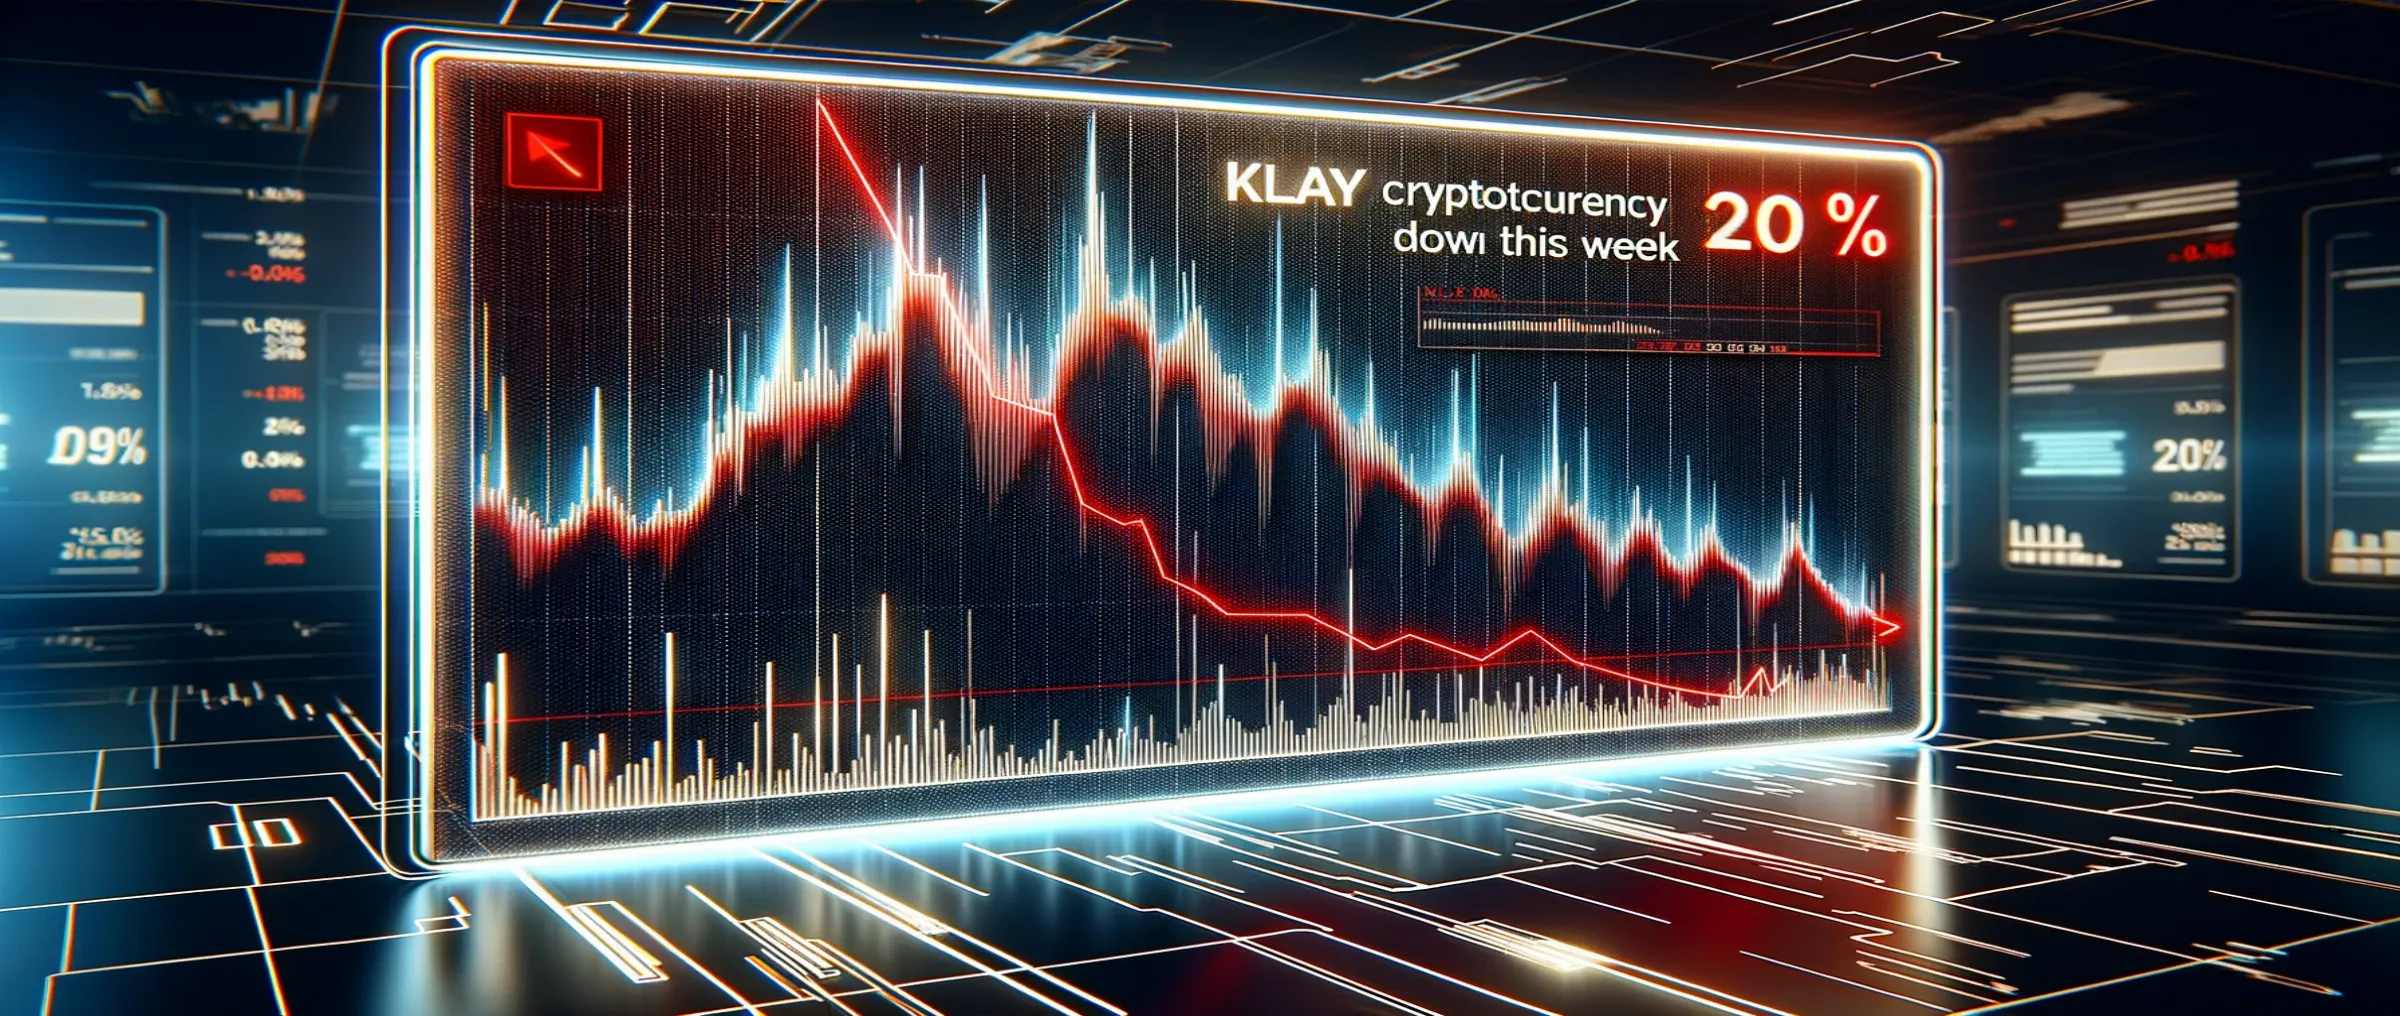 Курс криптовалюты KLAY упал на 20% за неделю